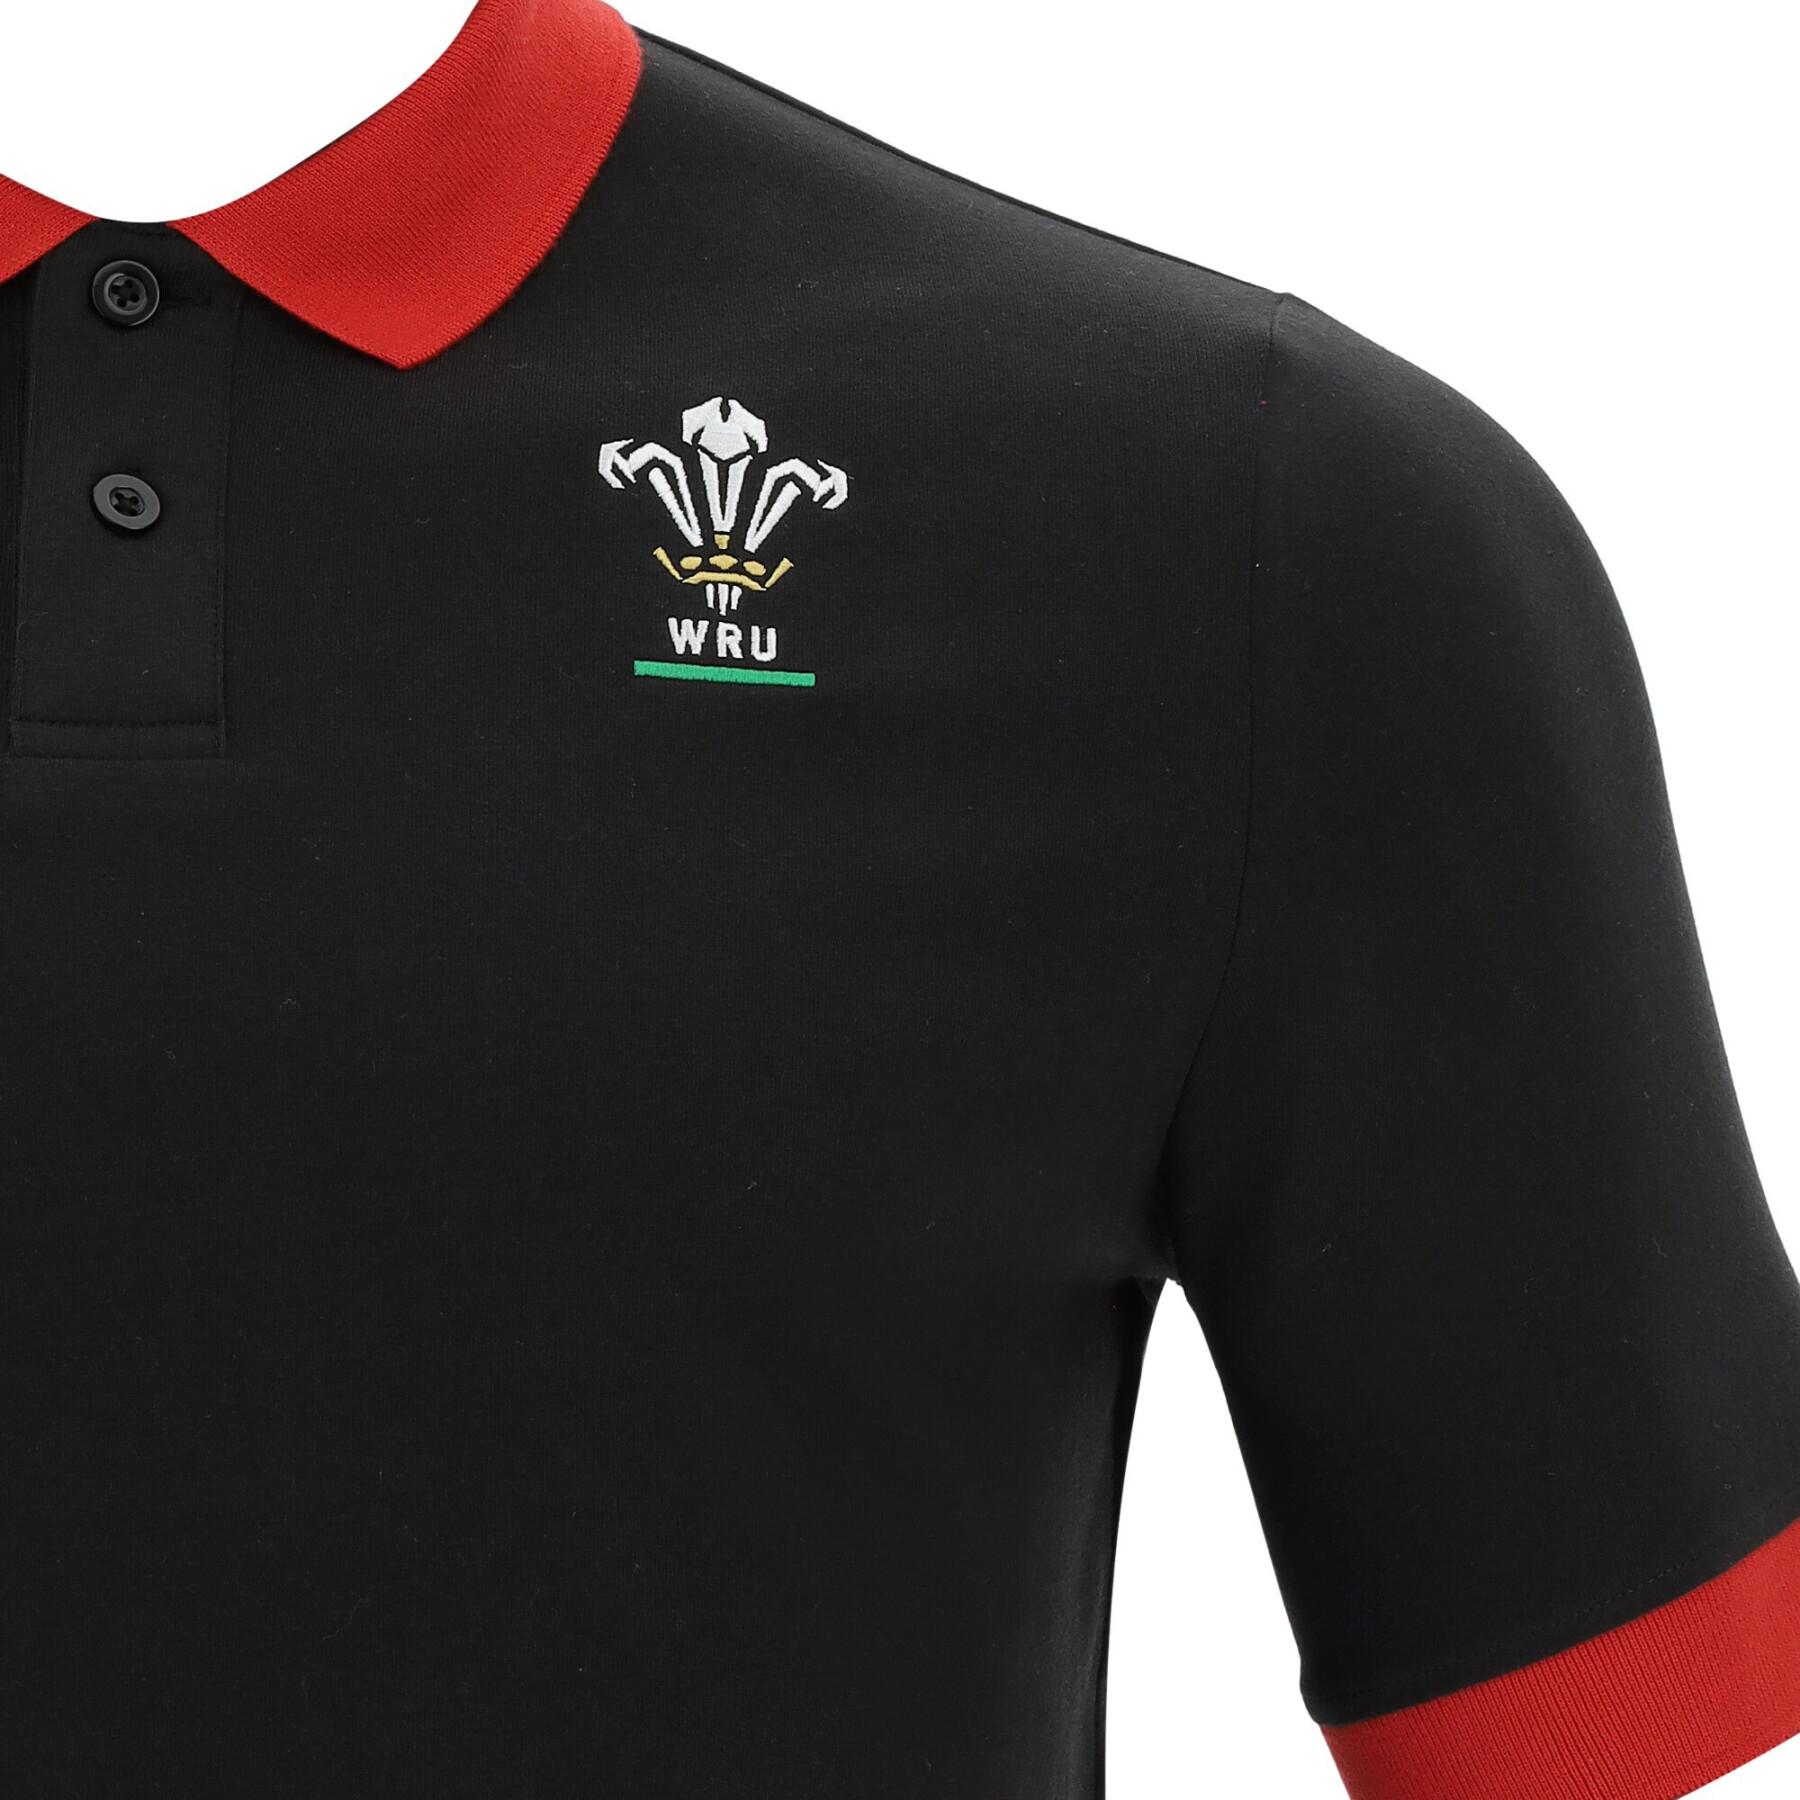 Camisa pólo pique algodão Pays de galles rugby 2020/21